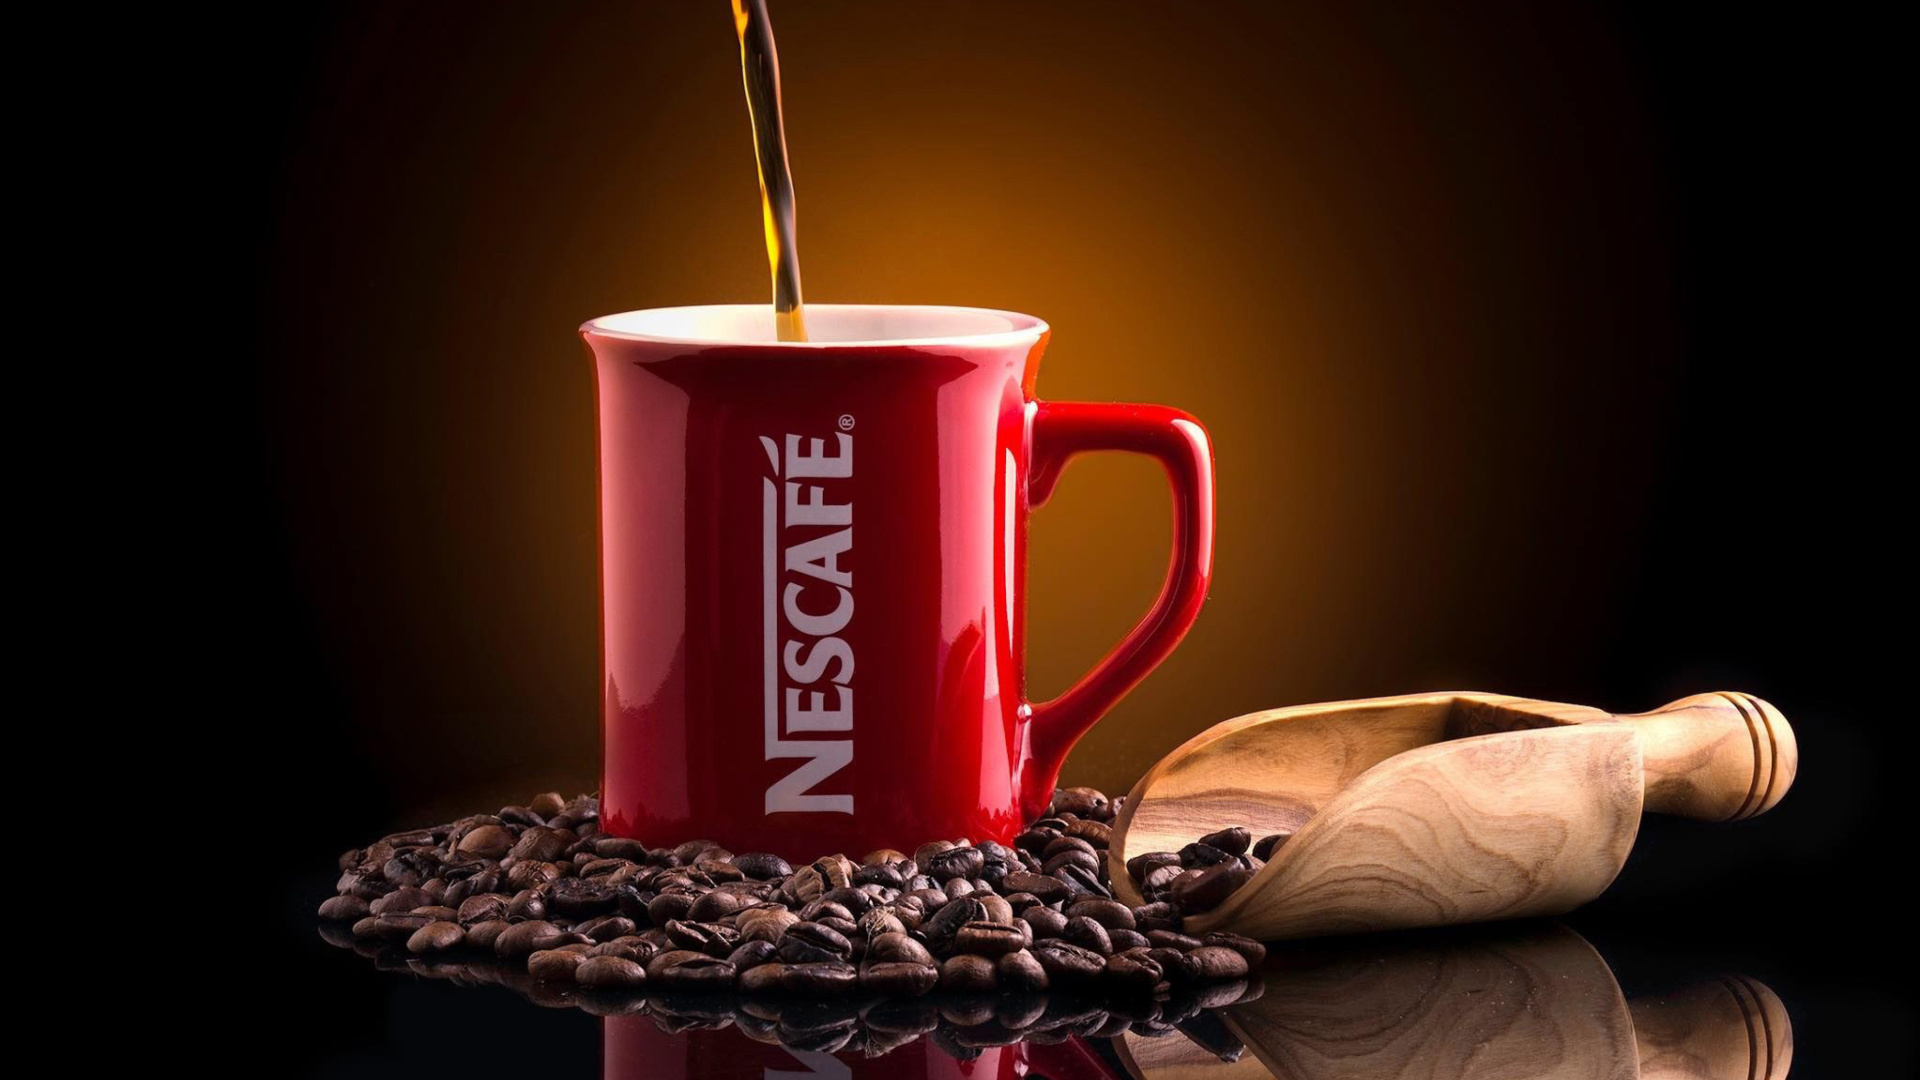 Nescafe Coffee wallpaper 1920x1080